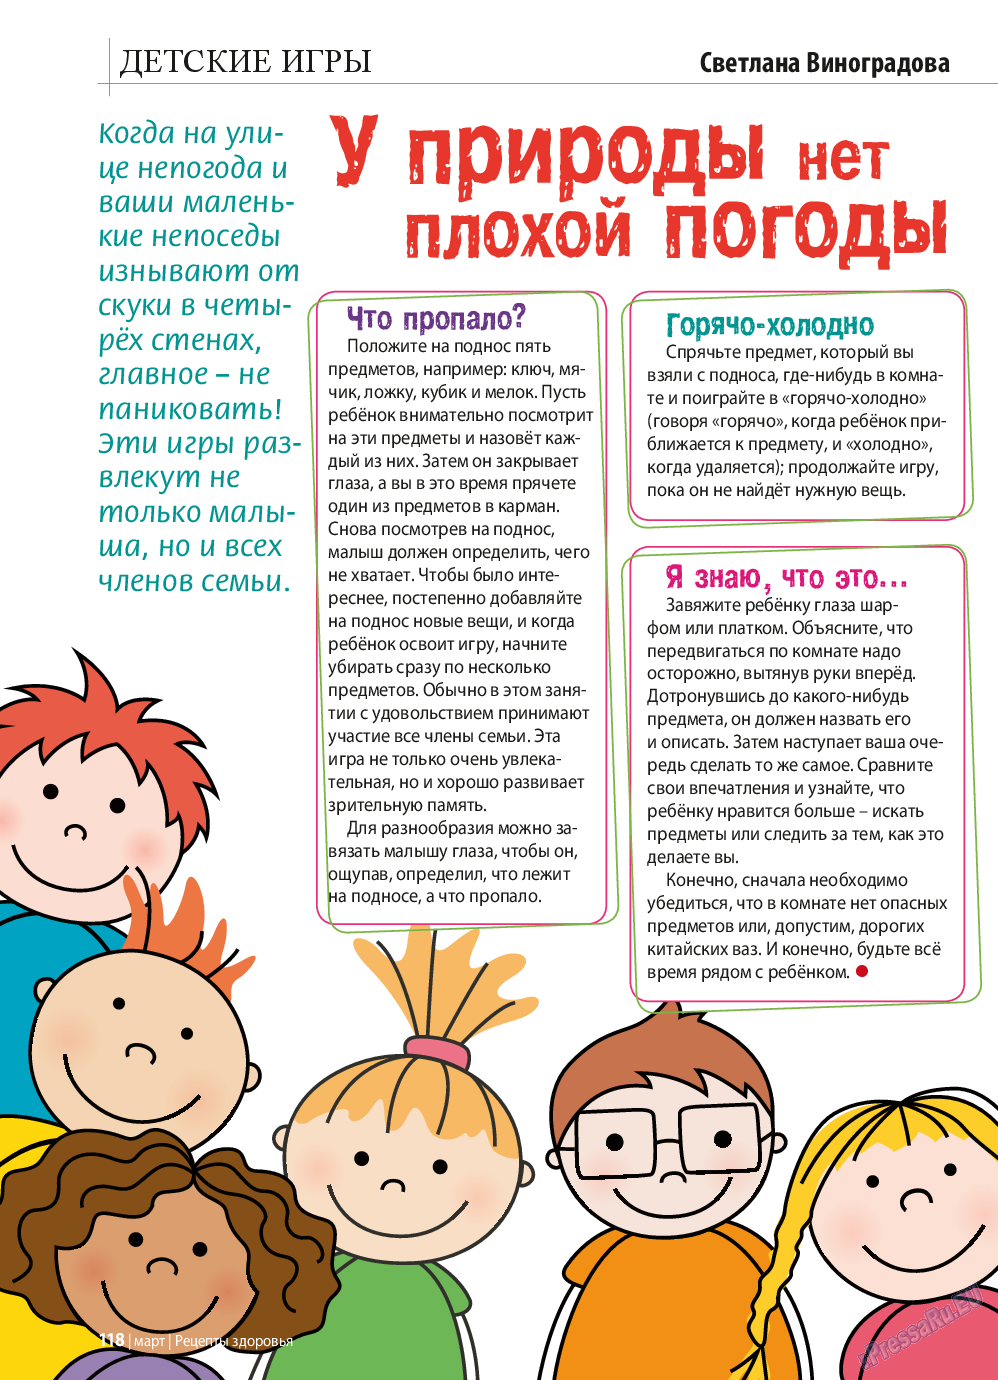 Рецепты здоровья, журнал. 2015 №70 стр.118